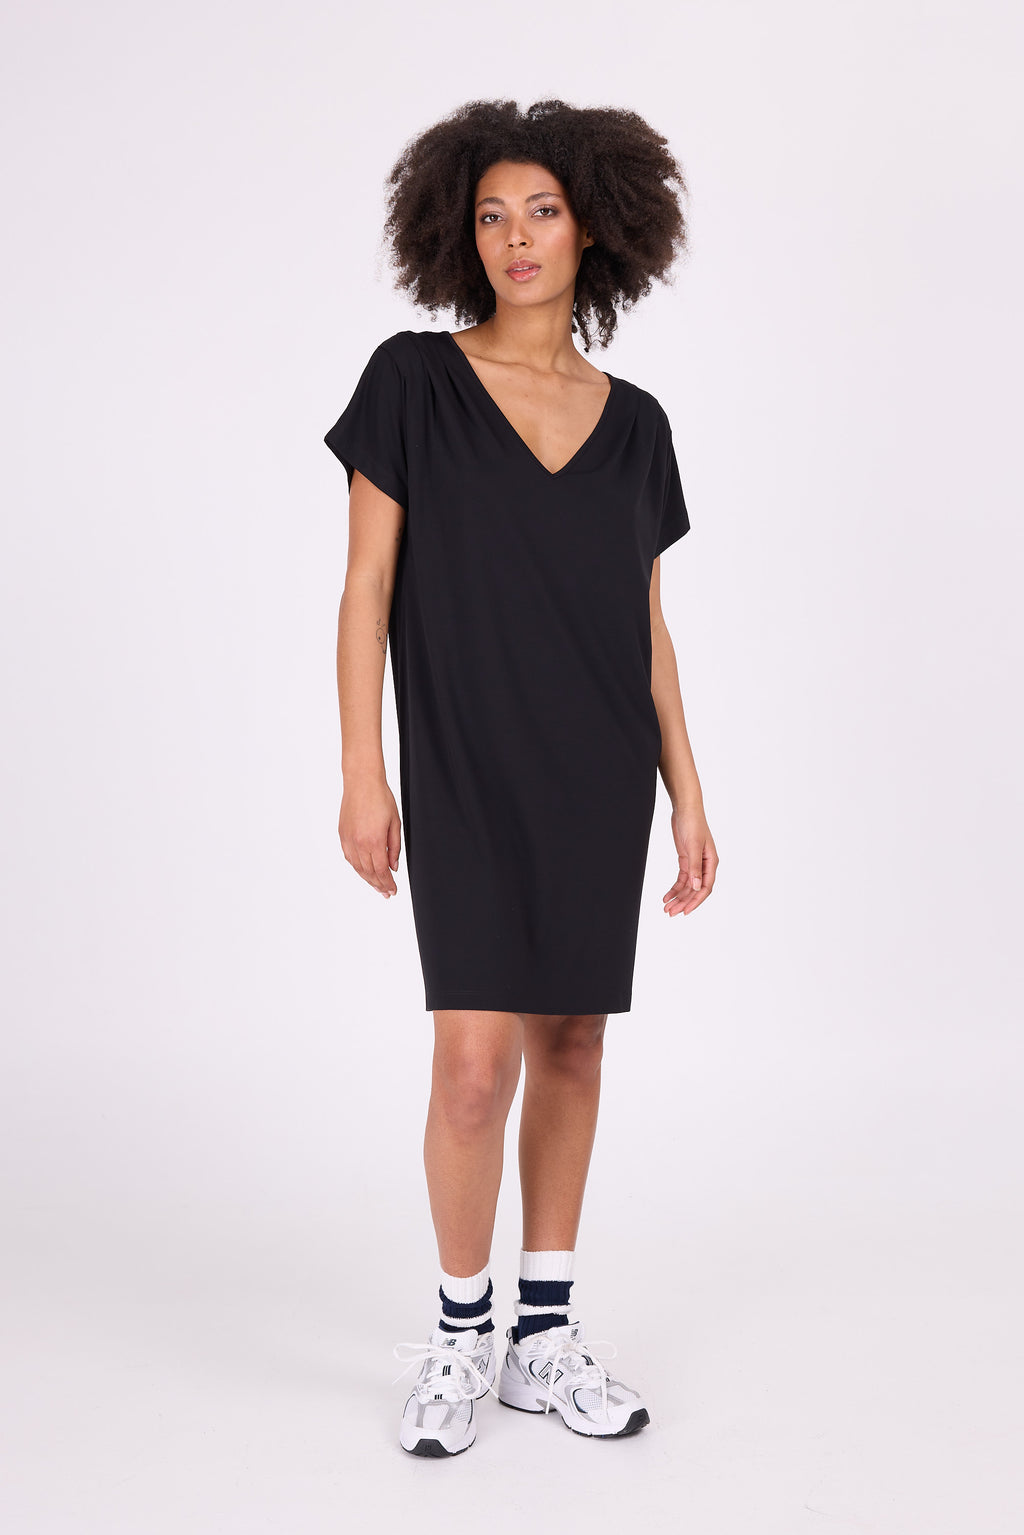 Dahlia zwarte jersey jurk